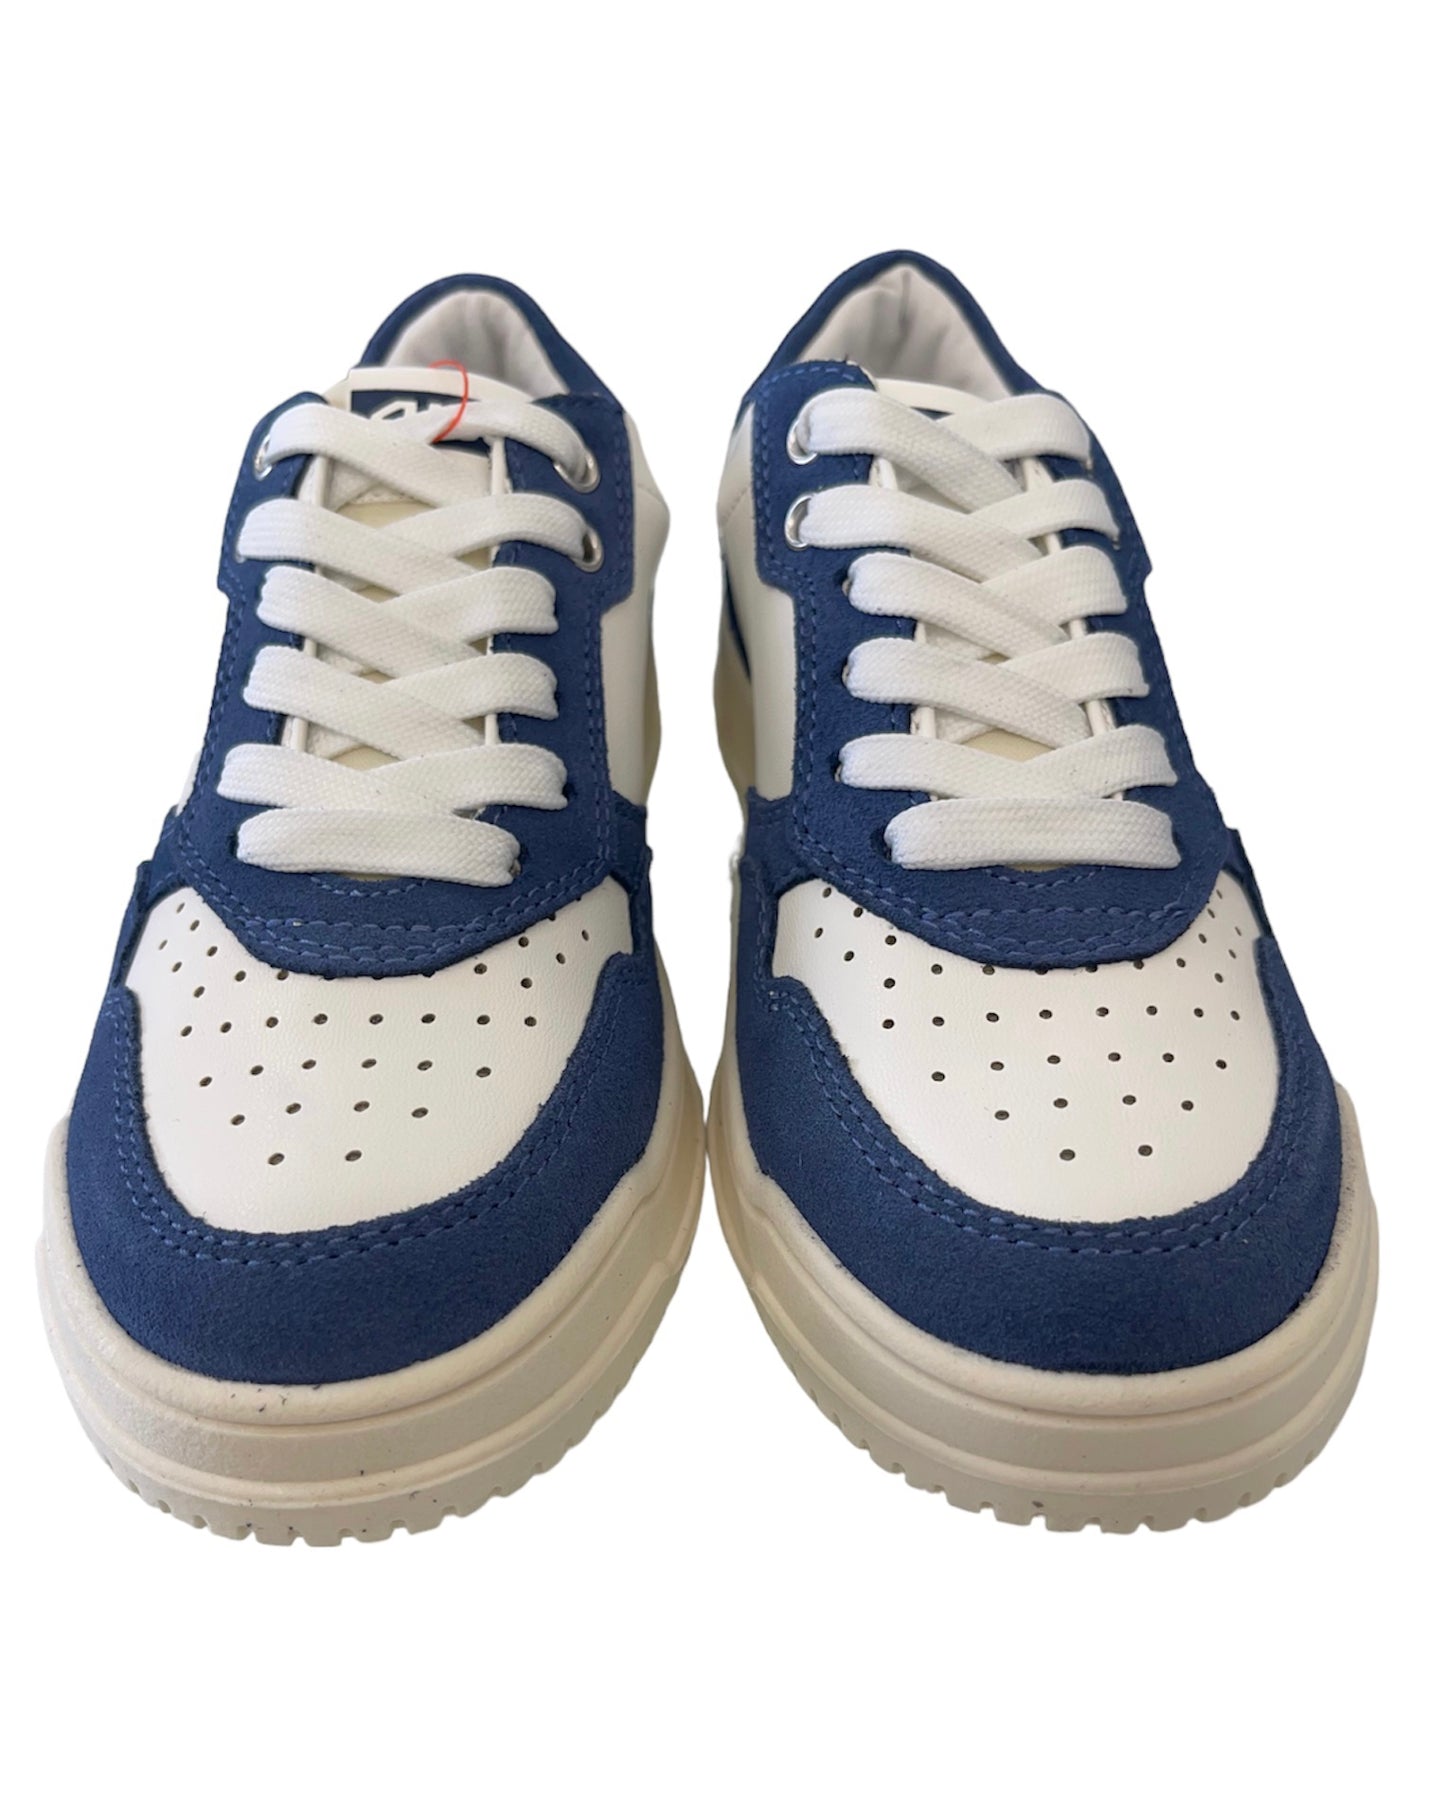 4US BY PACIOTTI - Sneakers bianca con dettaglio scamosciato azzurro